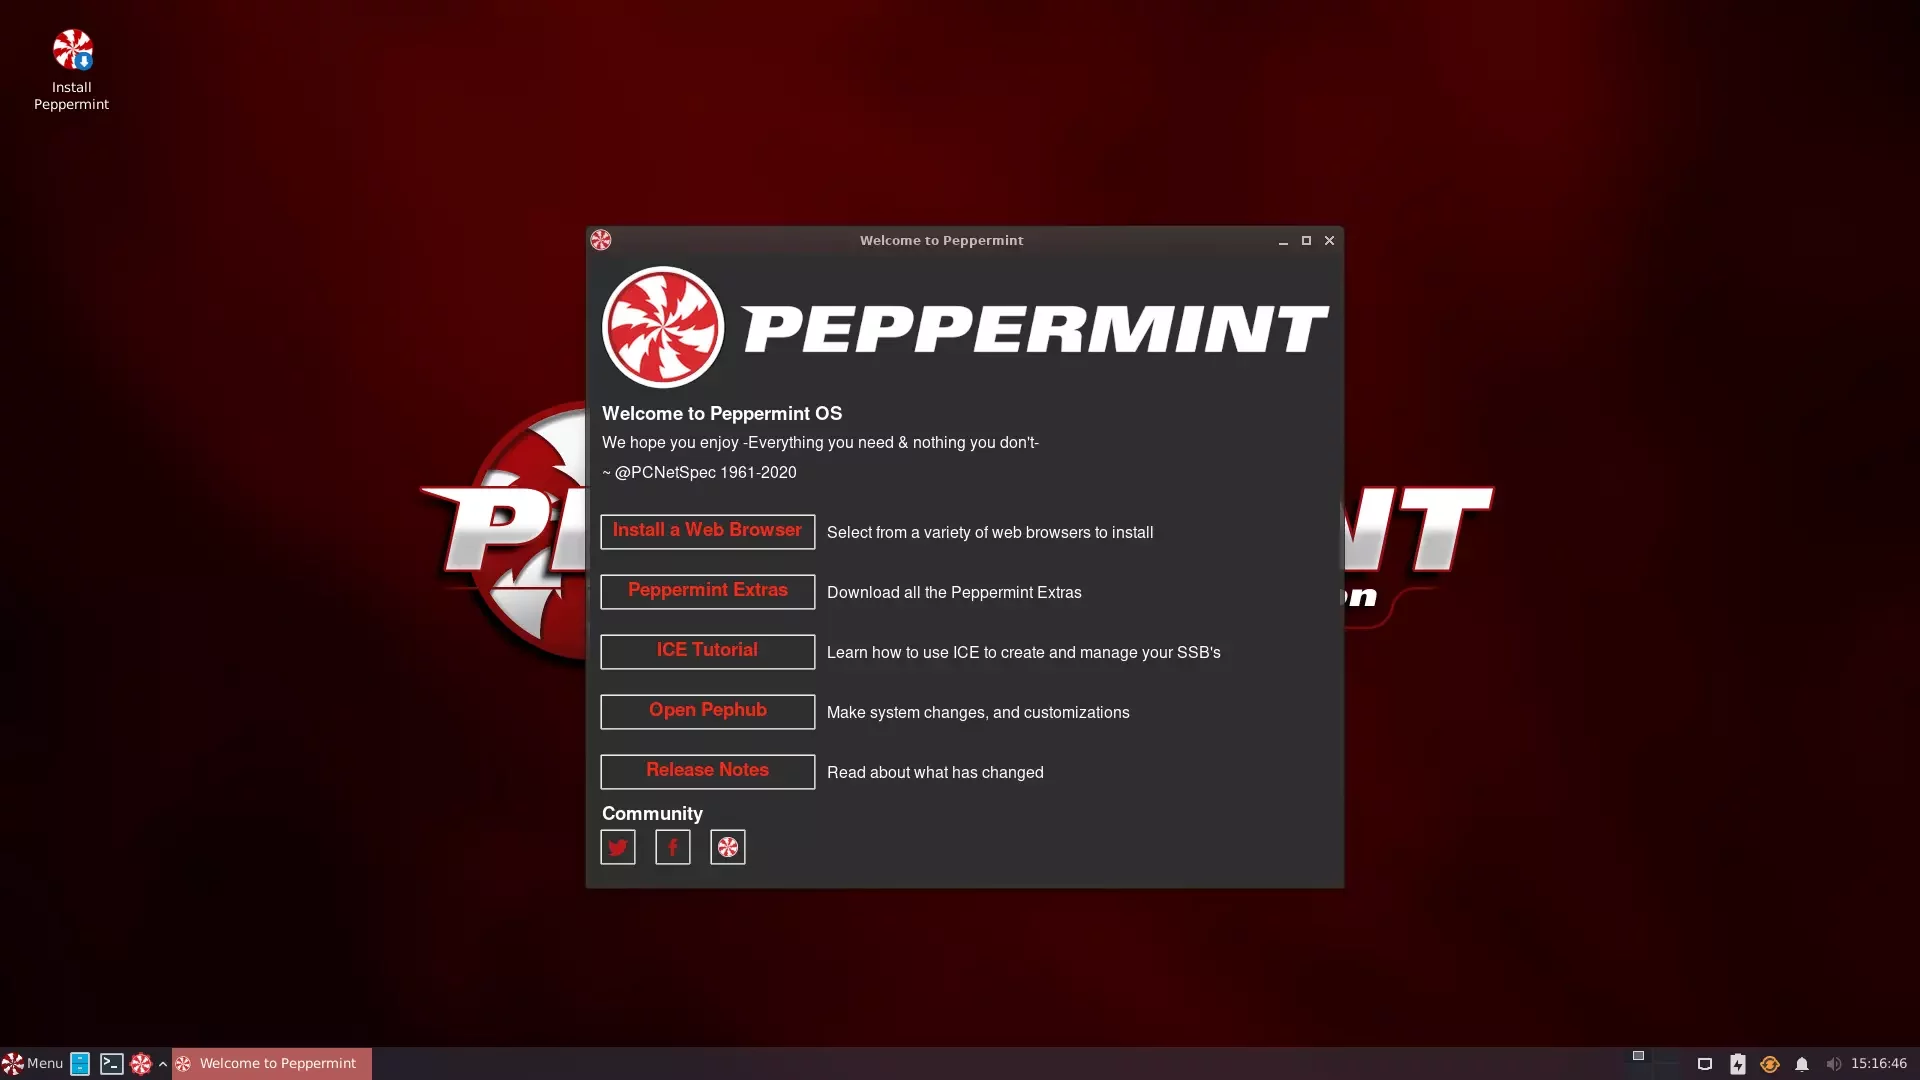 Janela de boas vindas do Peppermint OS 11